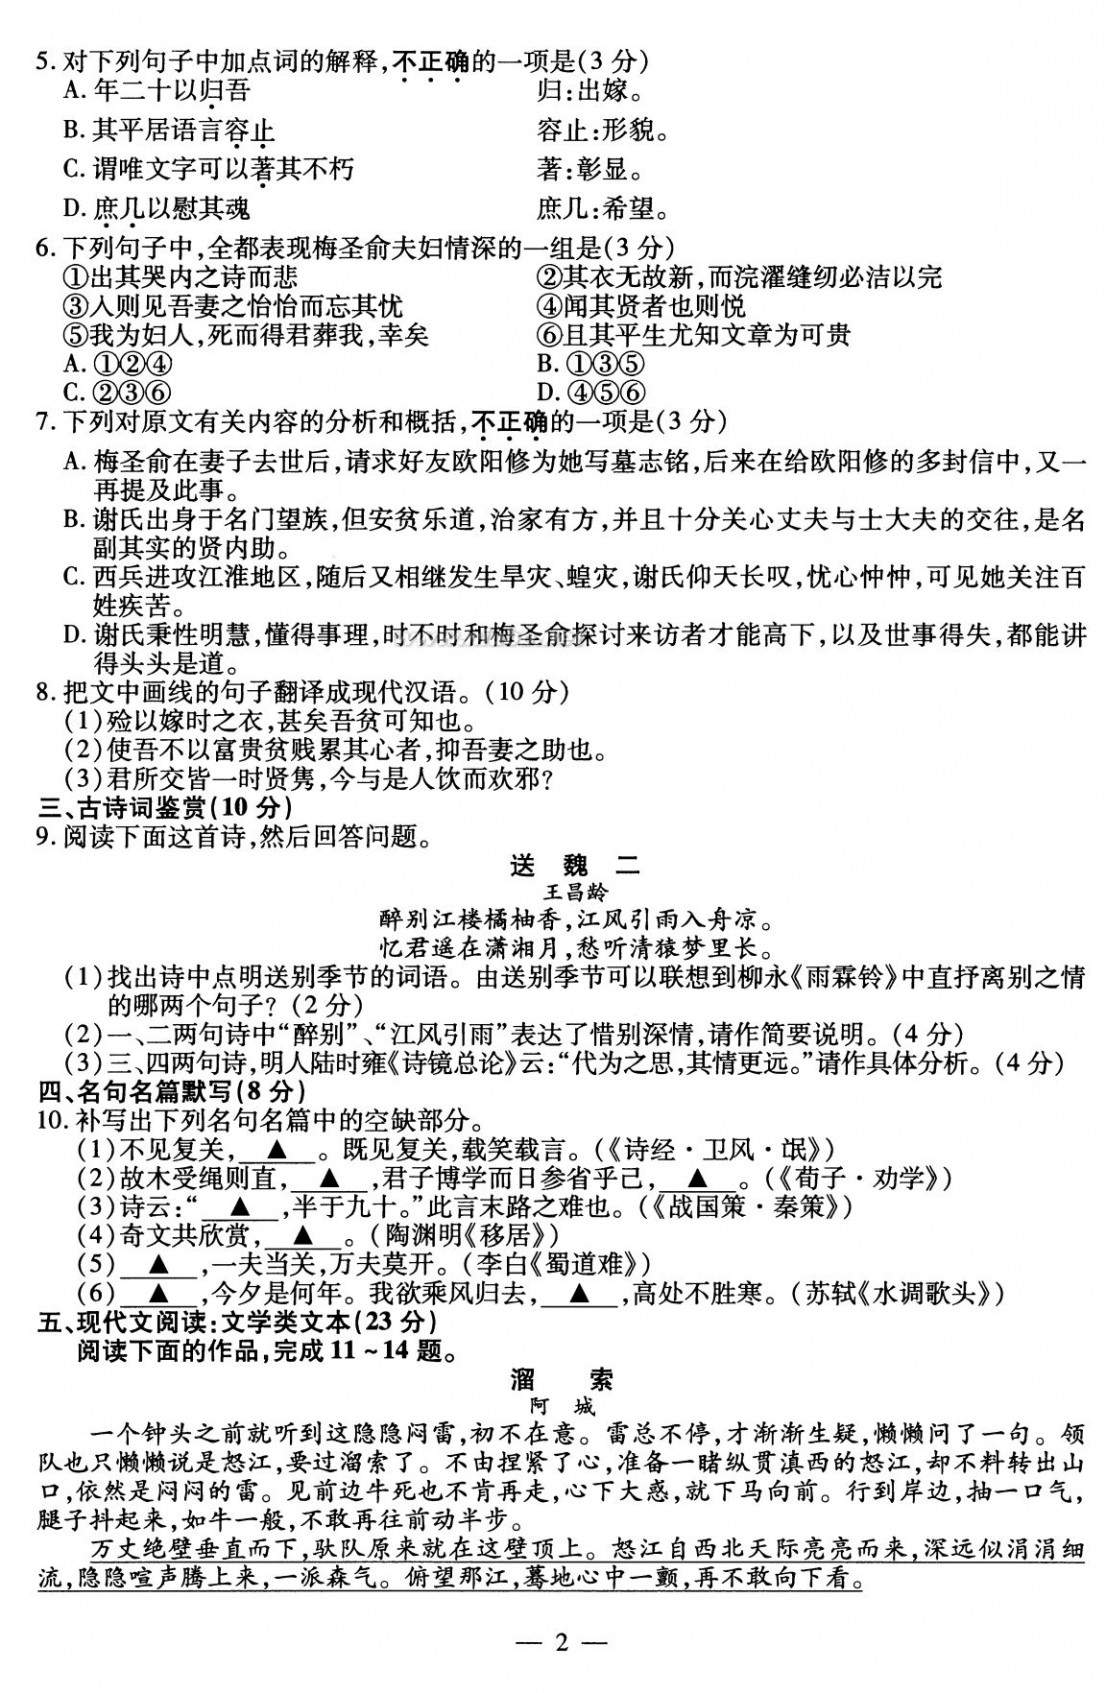 2010江苏高考语文试卷 2010江苏高考语文试题及答案